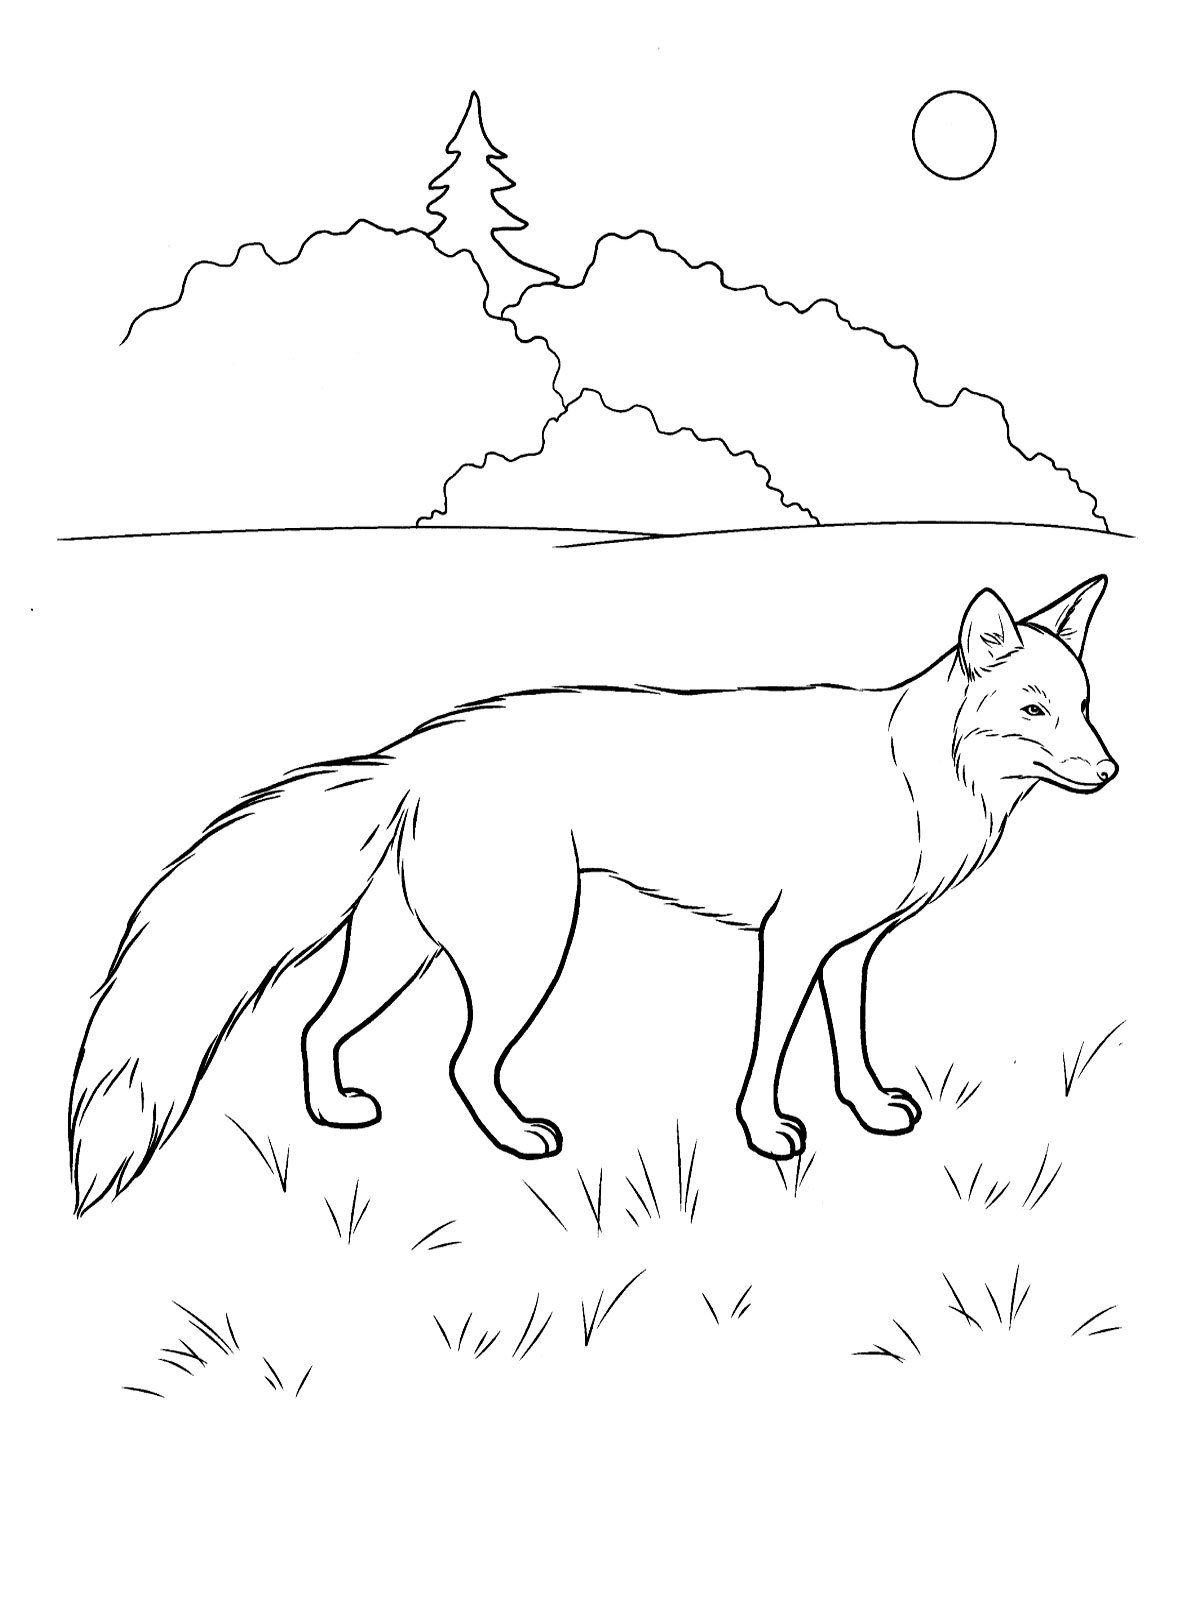 Рисунок лисы для раскрашивания